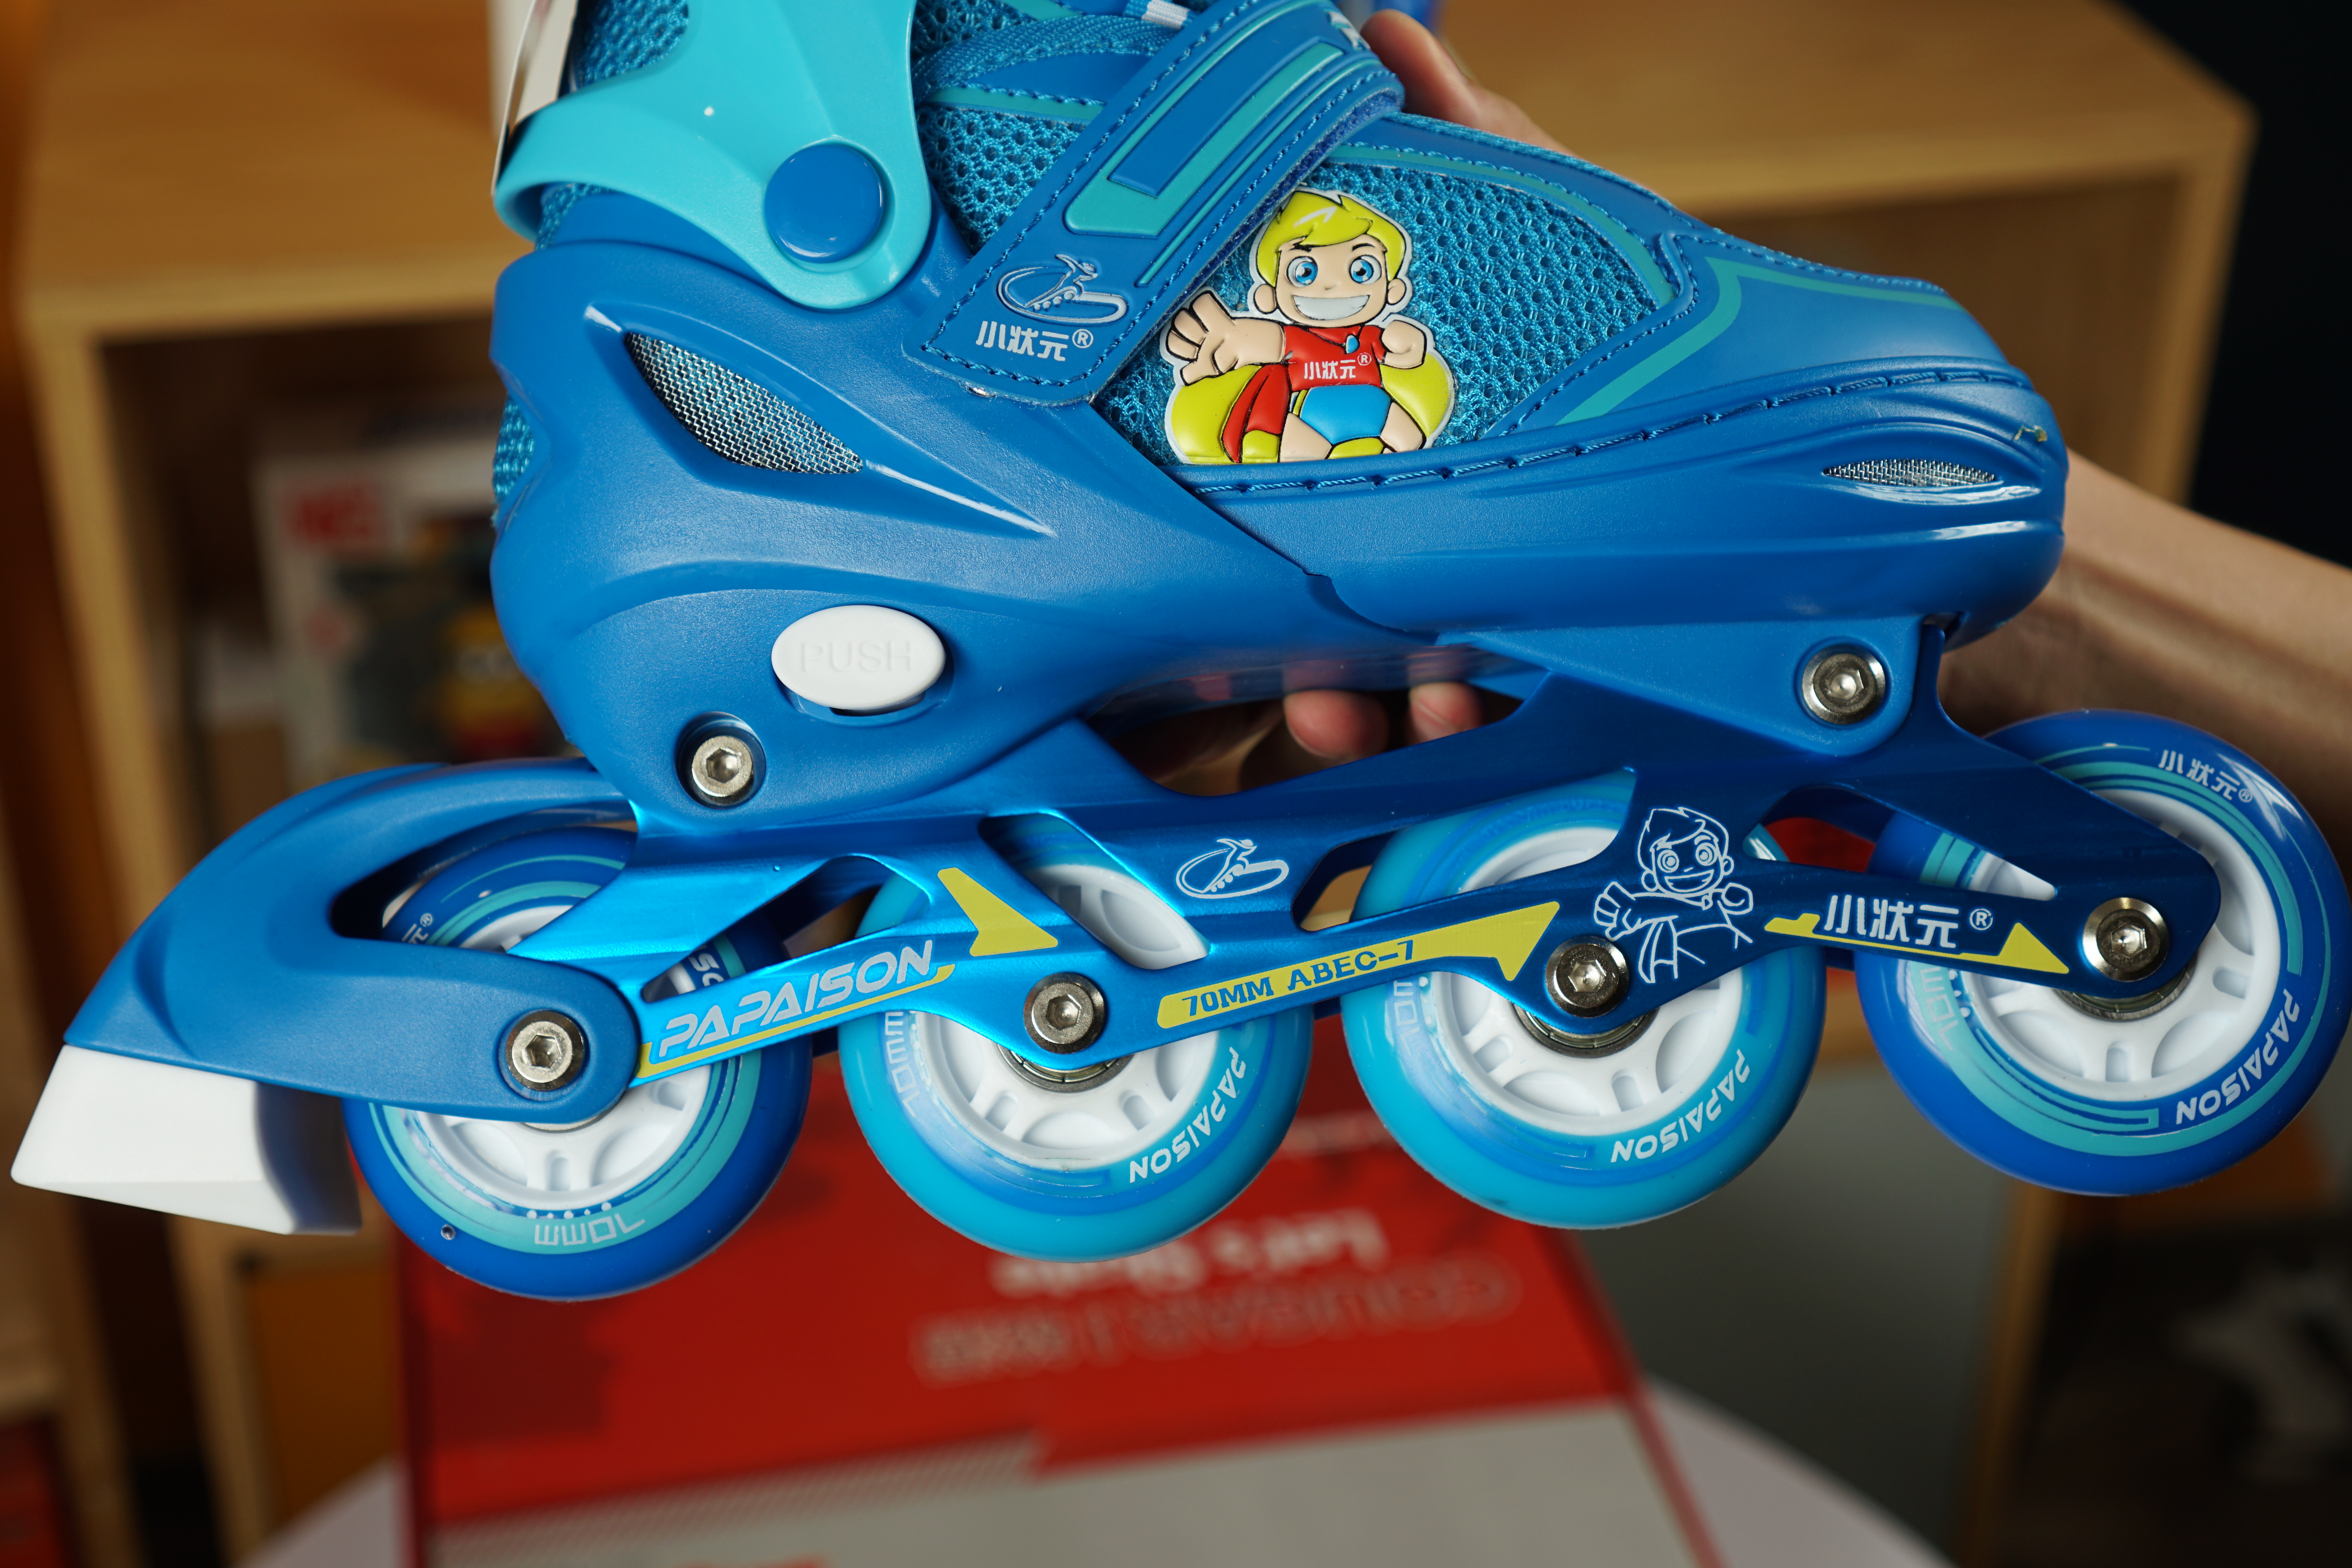 Giày Trượt Patin Papasion Kids 2 Màu (Xanh, Hồng) được thiết kế hết sức bắt mắt. Bạn muốn mua một đôi giày patin cho bé yêu nhà mình để rèn luyện sức khỏe, giúp bé năng động hơn. Vậy thì đừng bỏ qua đôi giày patin Papaision Kid